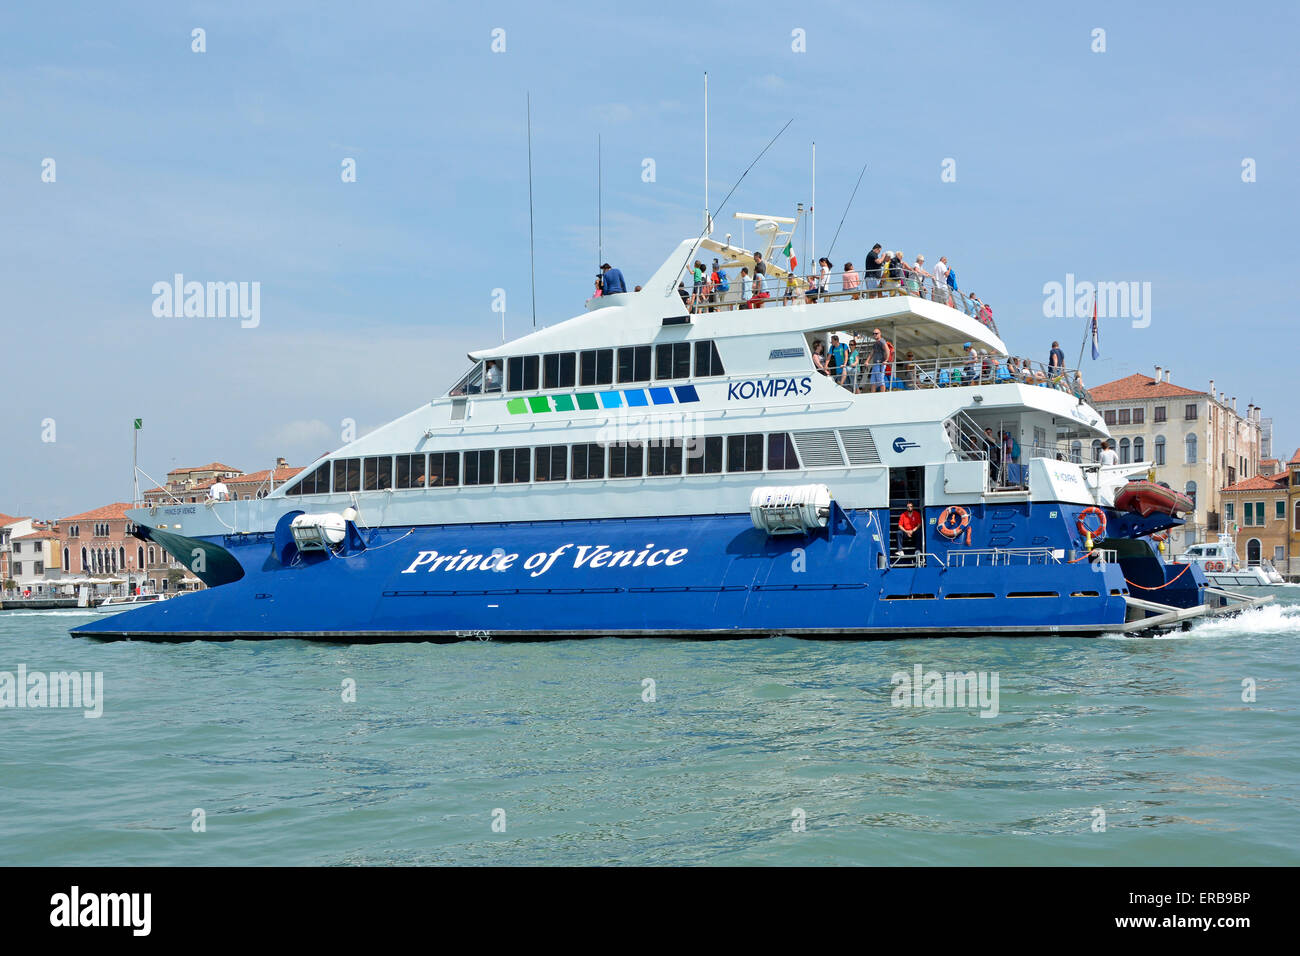 Sightseeing-Tour für Touristen Passagiere auf Katamaran "Prinz von Venedig" für Kompas Ausflug auf Giudecca Canal & Venedig Wasserstraßen in der venezianischen Lagune Italien Stockfoto